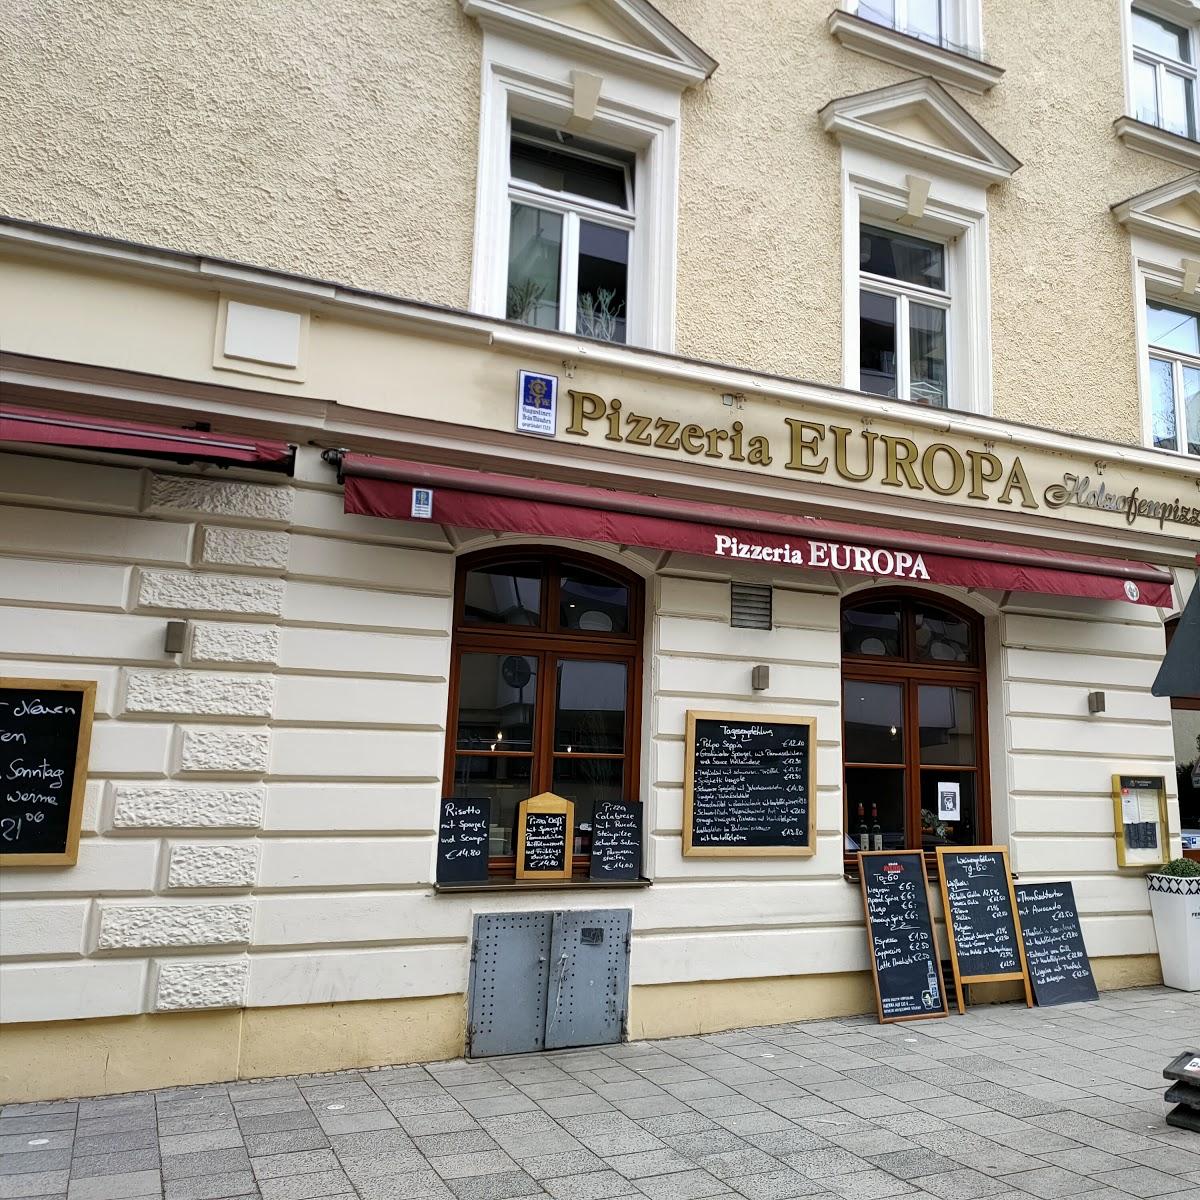 Restaurant "Pizzeria-Europa" in München